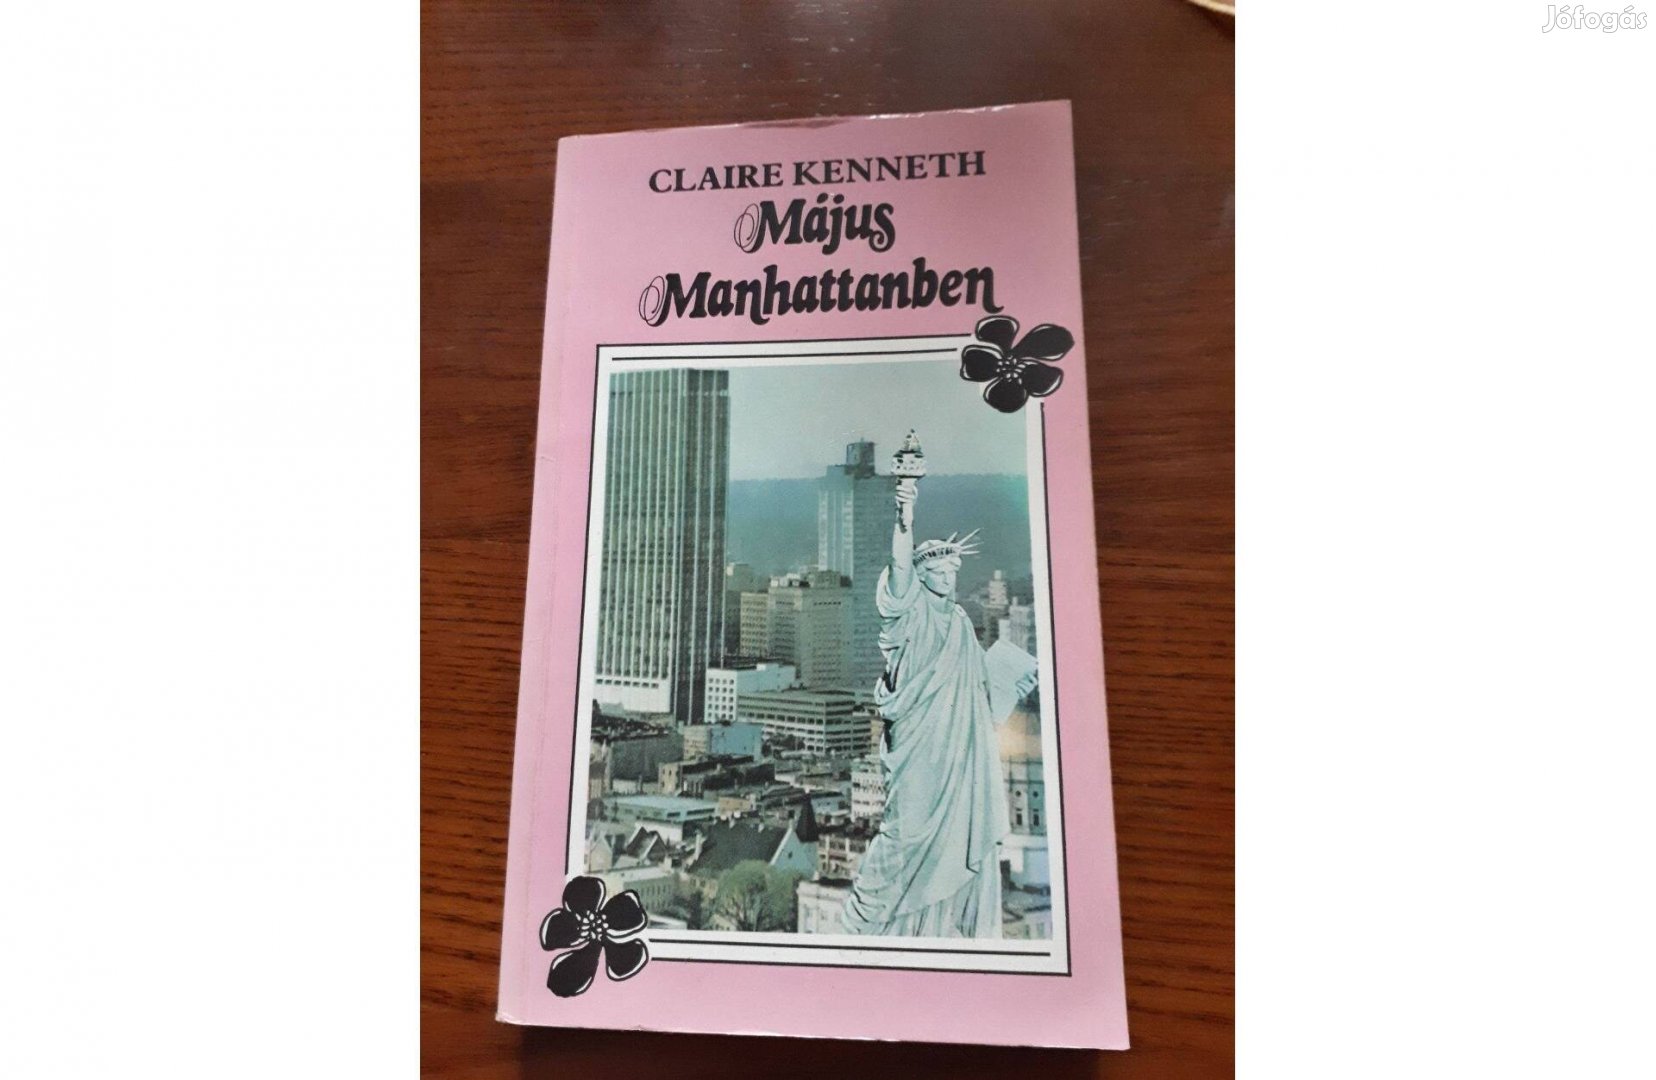 Claire Kenneth - Május Manhattanben könyv, regény. alig használt